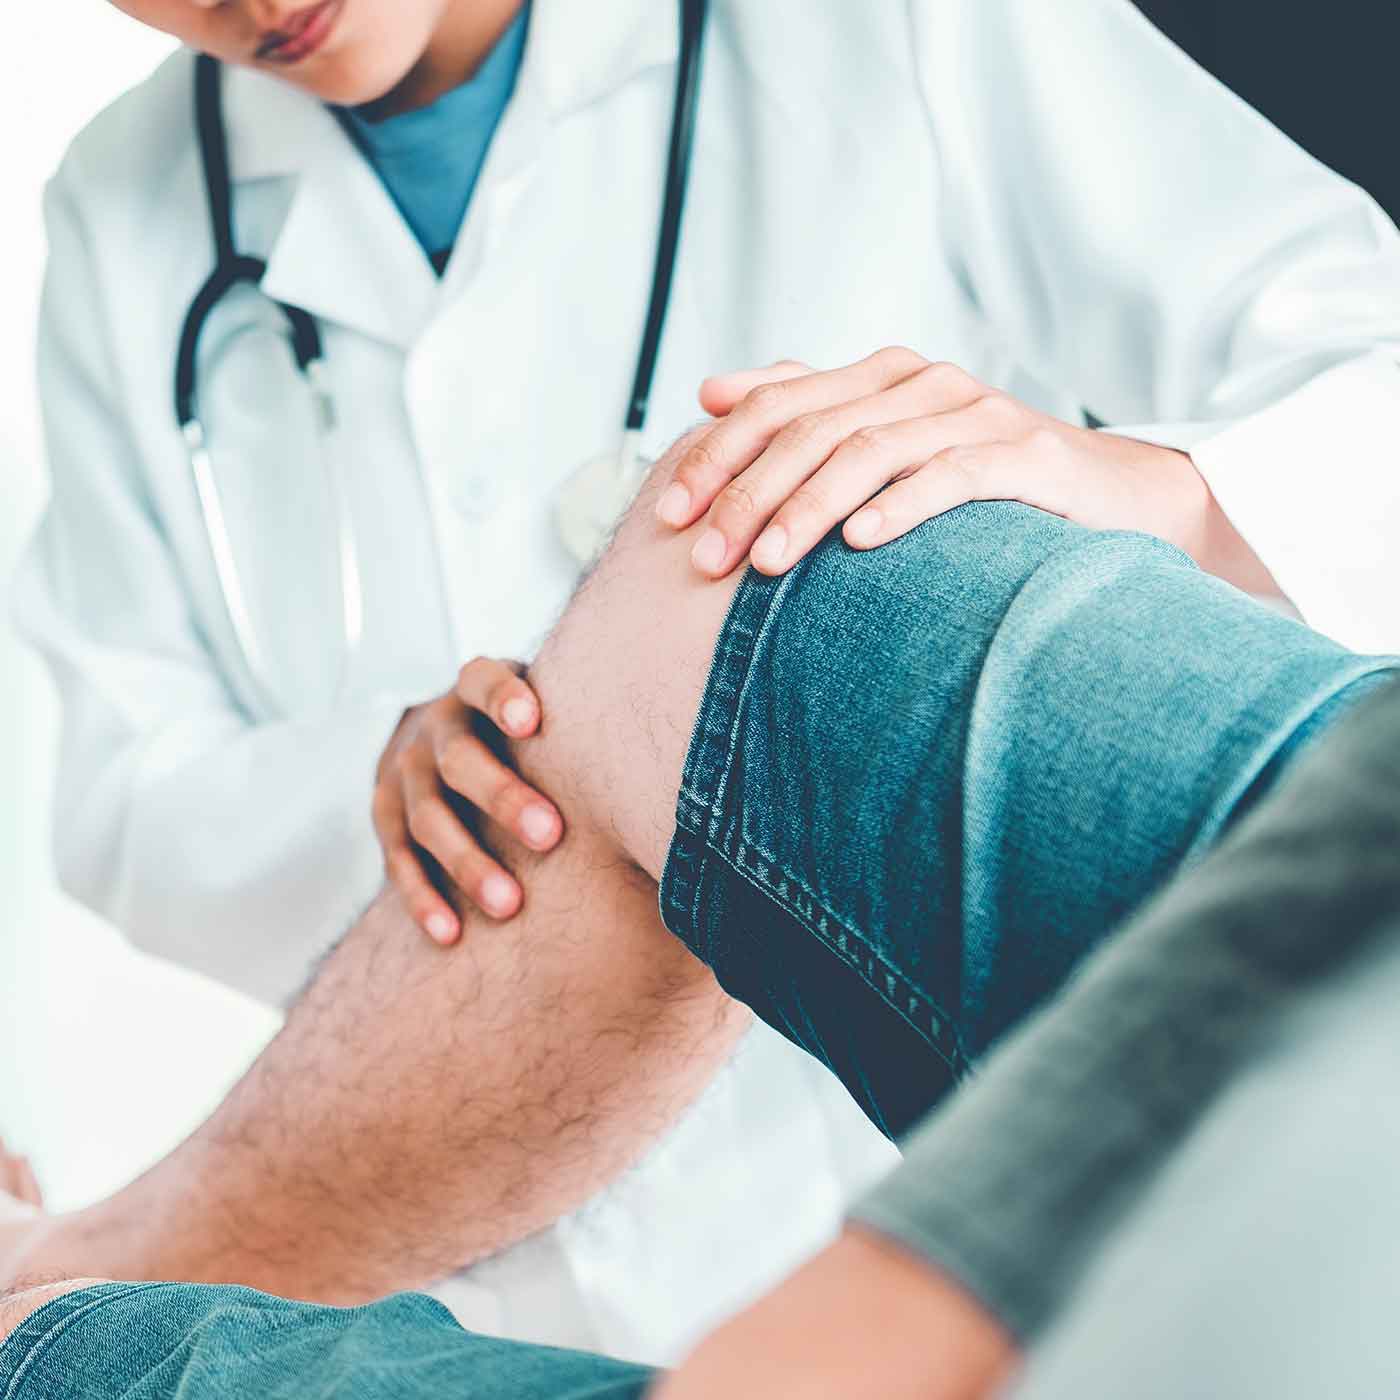 What’s Causing My Knee Pain?